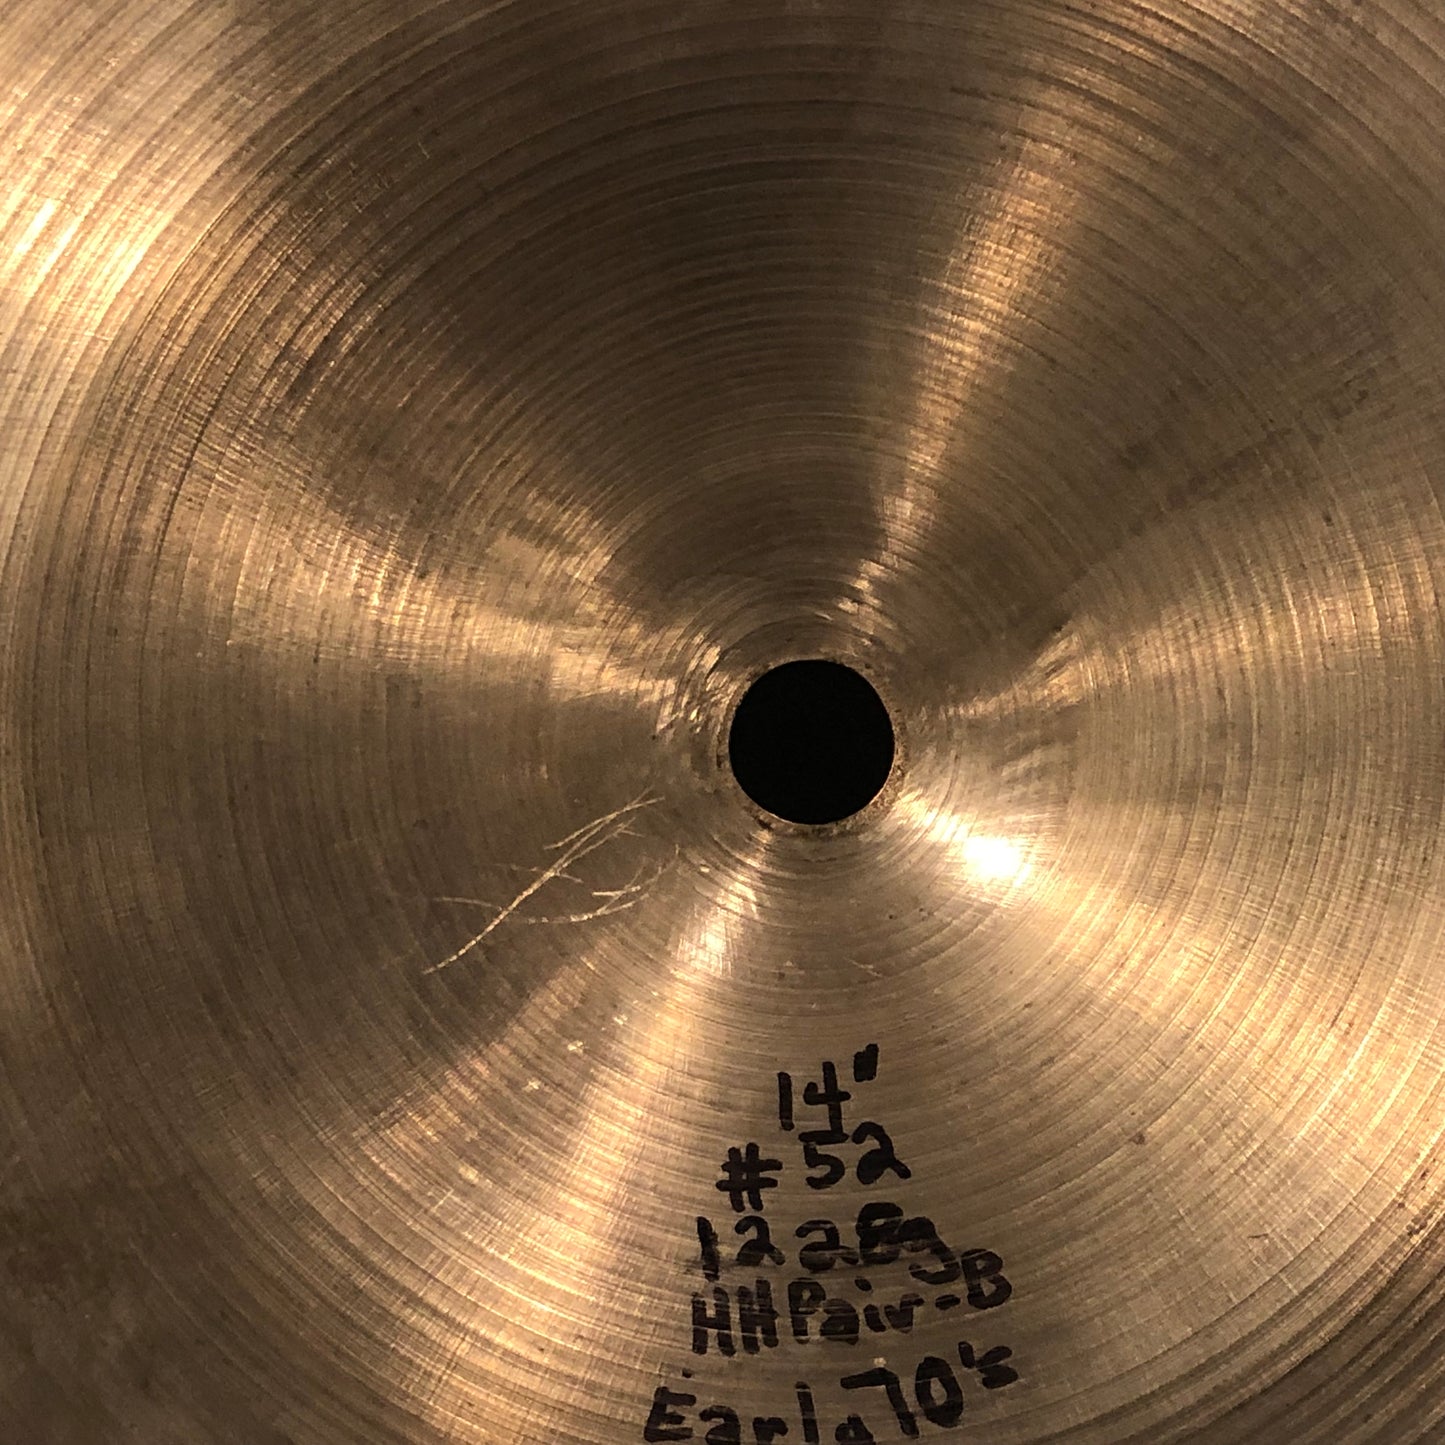 14" Zildjian A 1970s Hi-Hat Cymbal Set 892/1228g #52